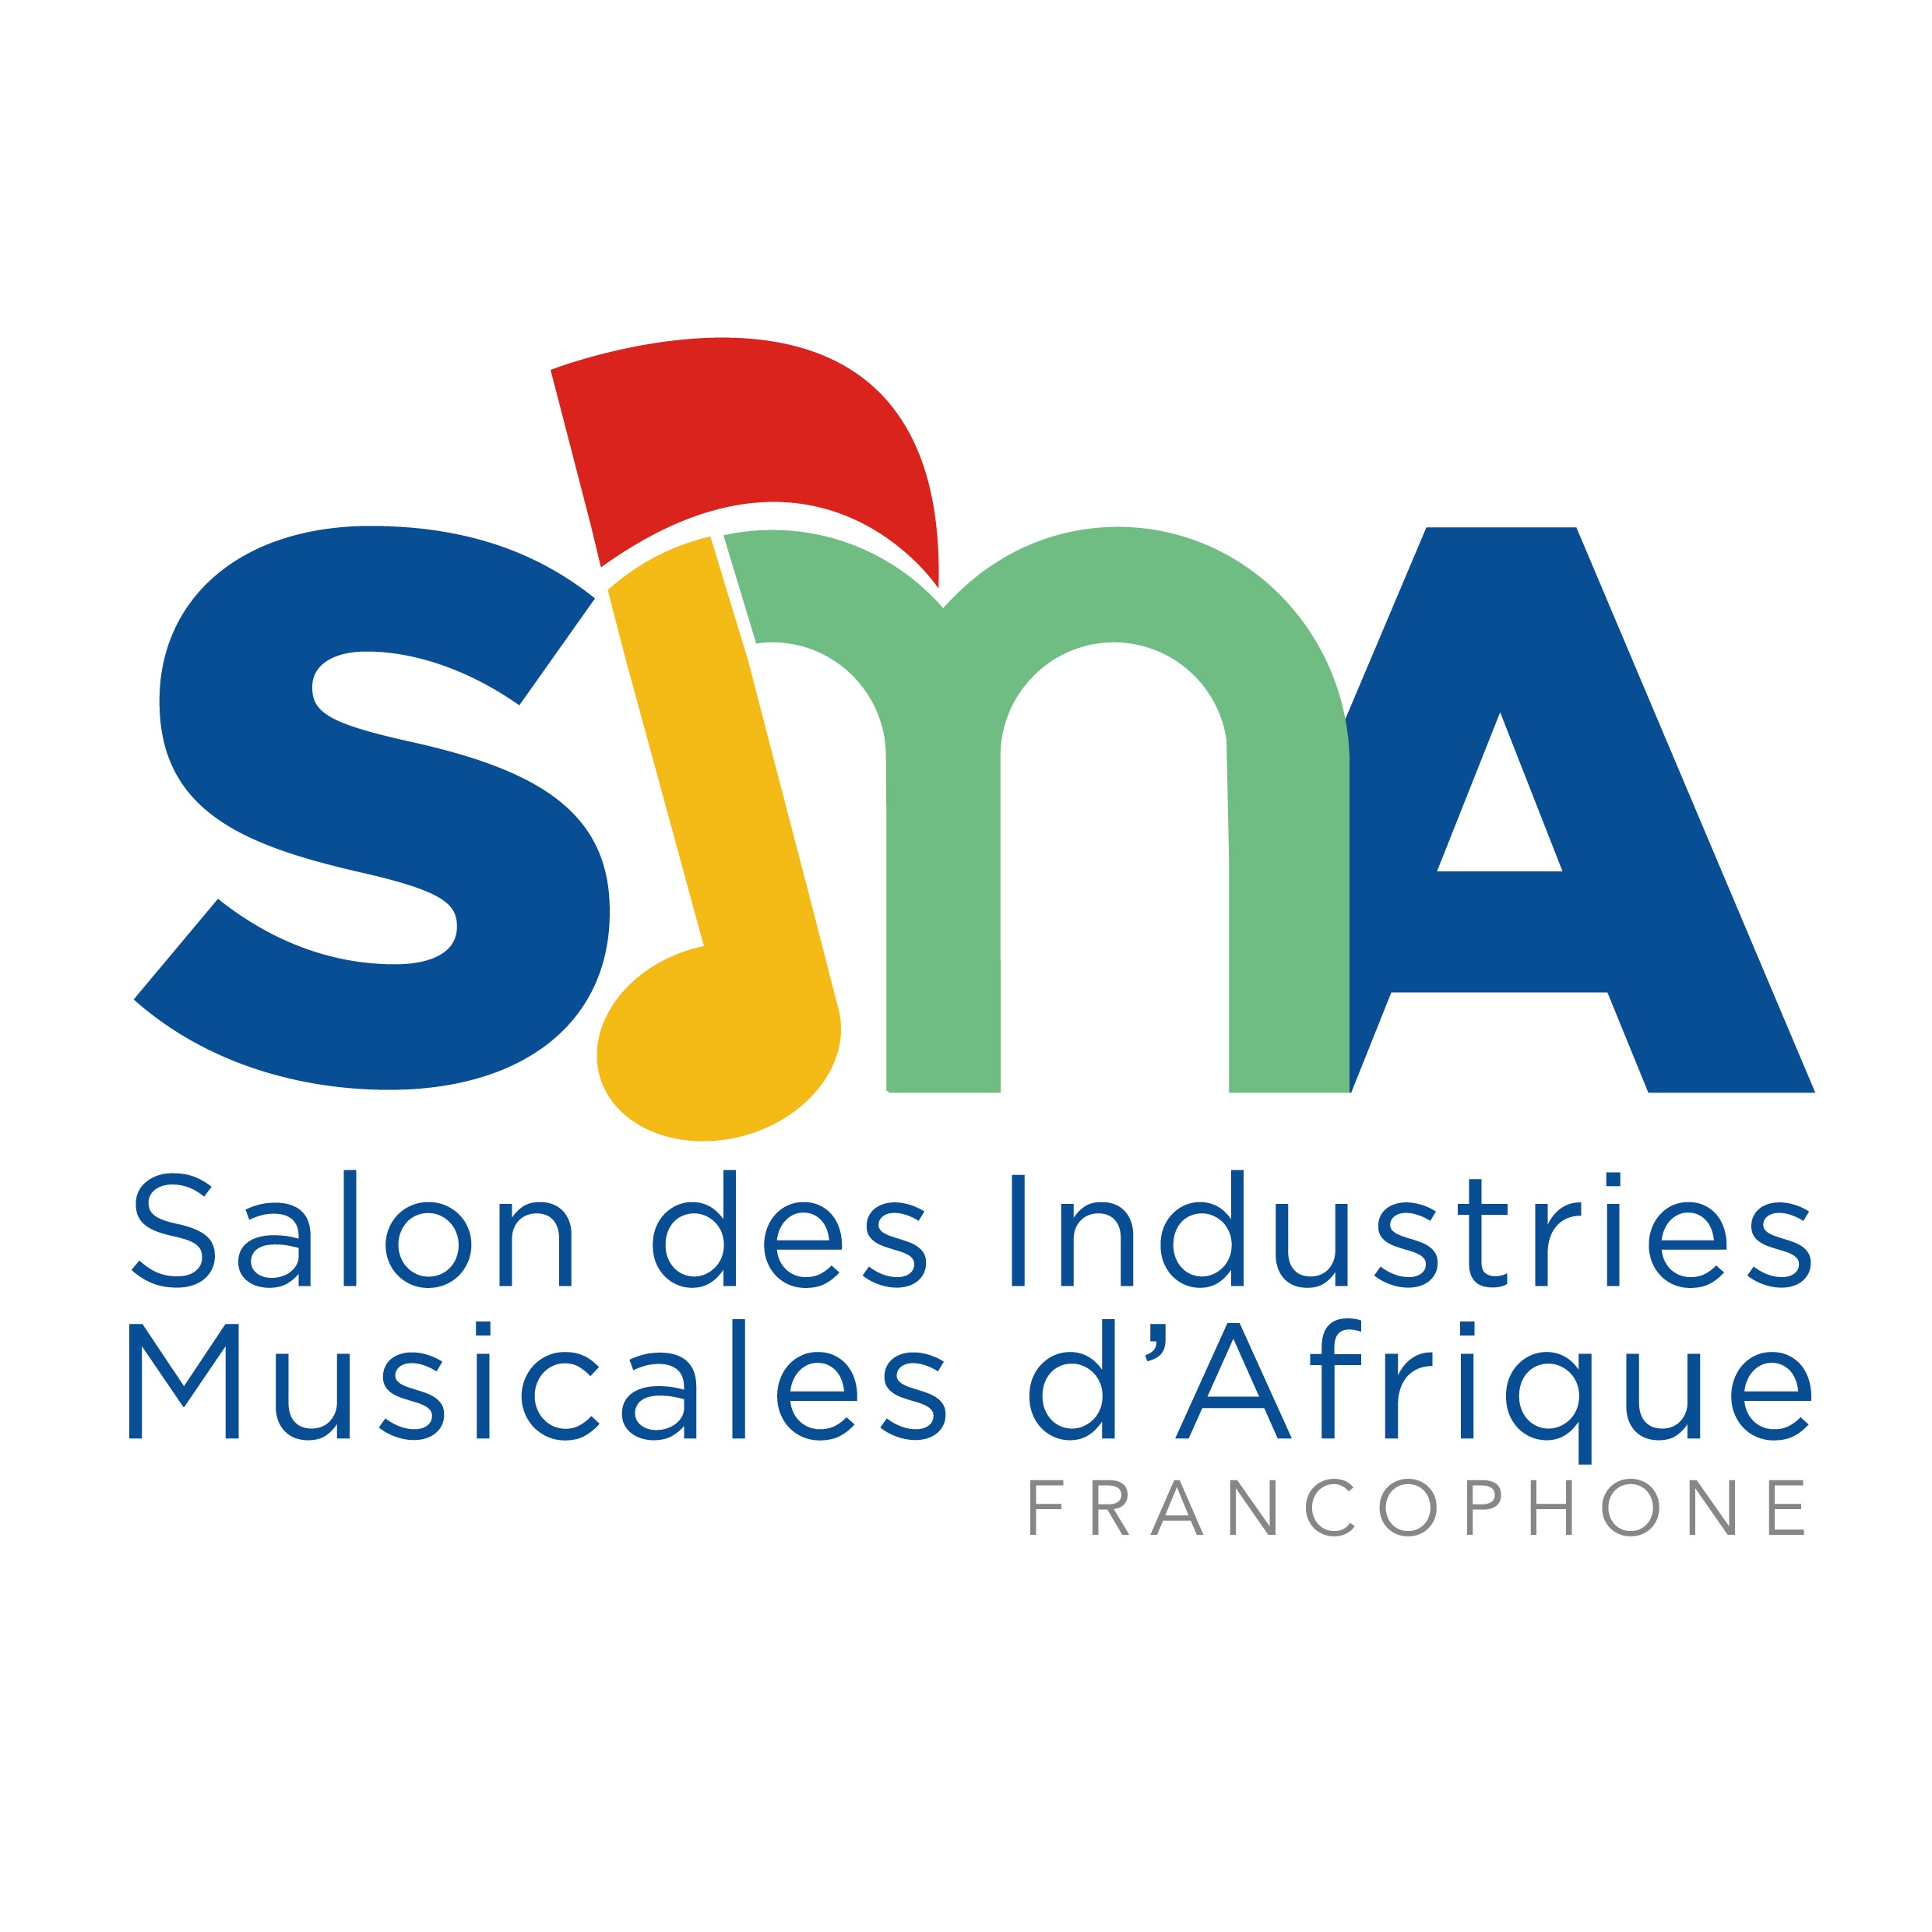 Abidjan hôte d’un salon sur les industries musicales africaines